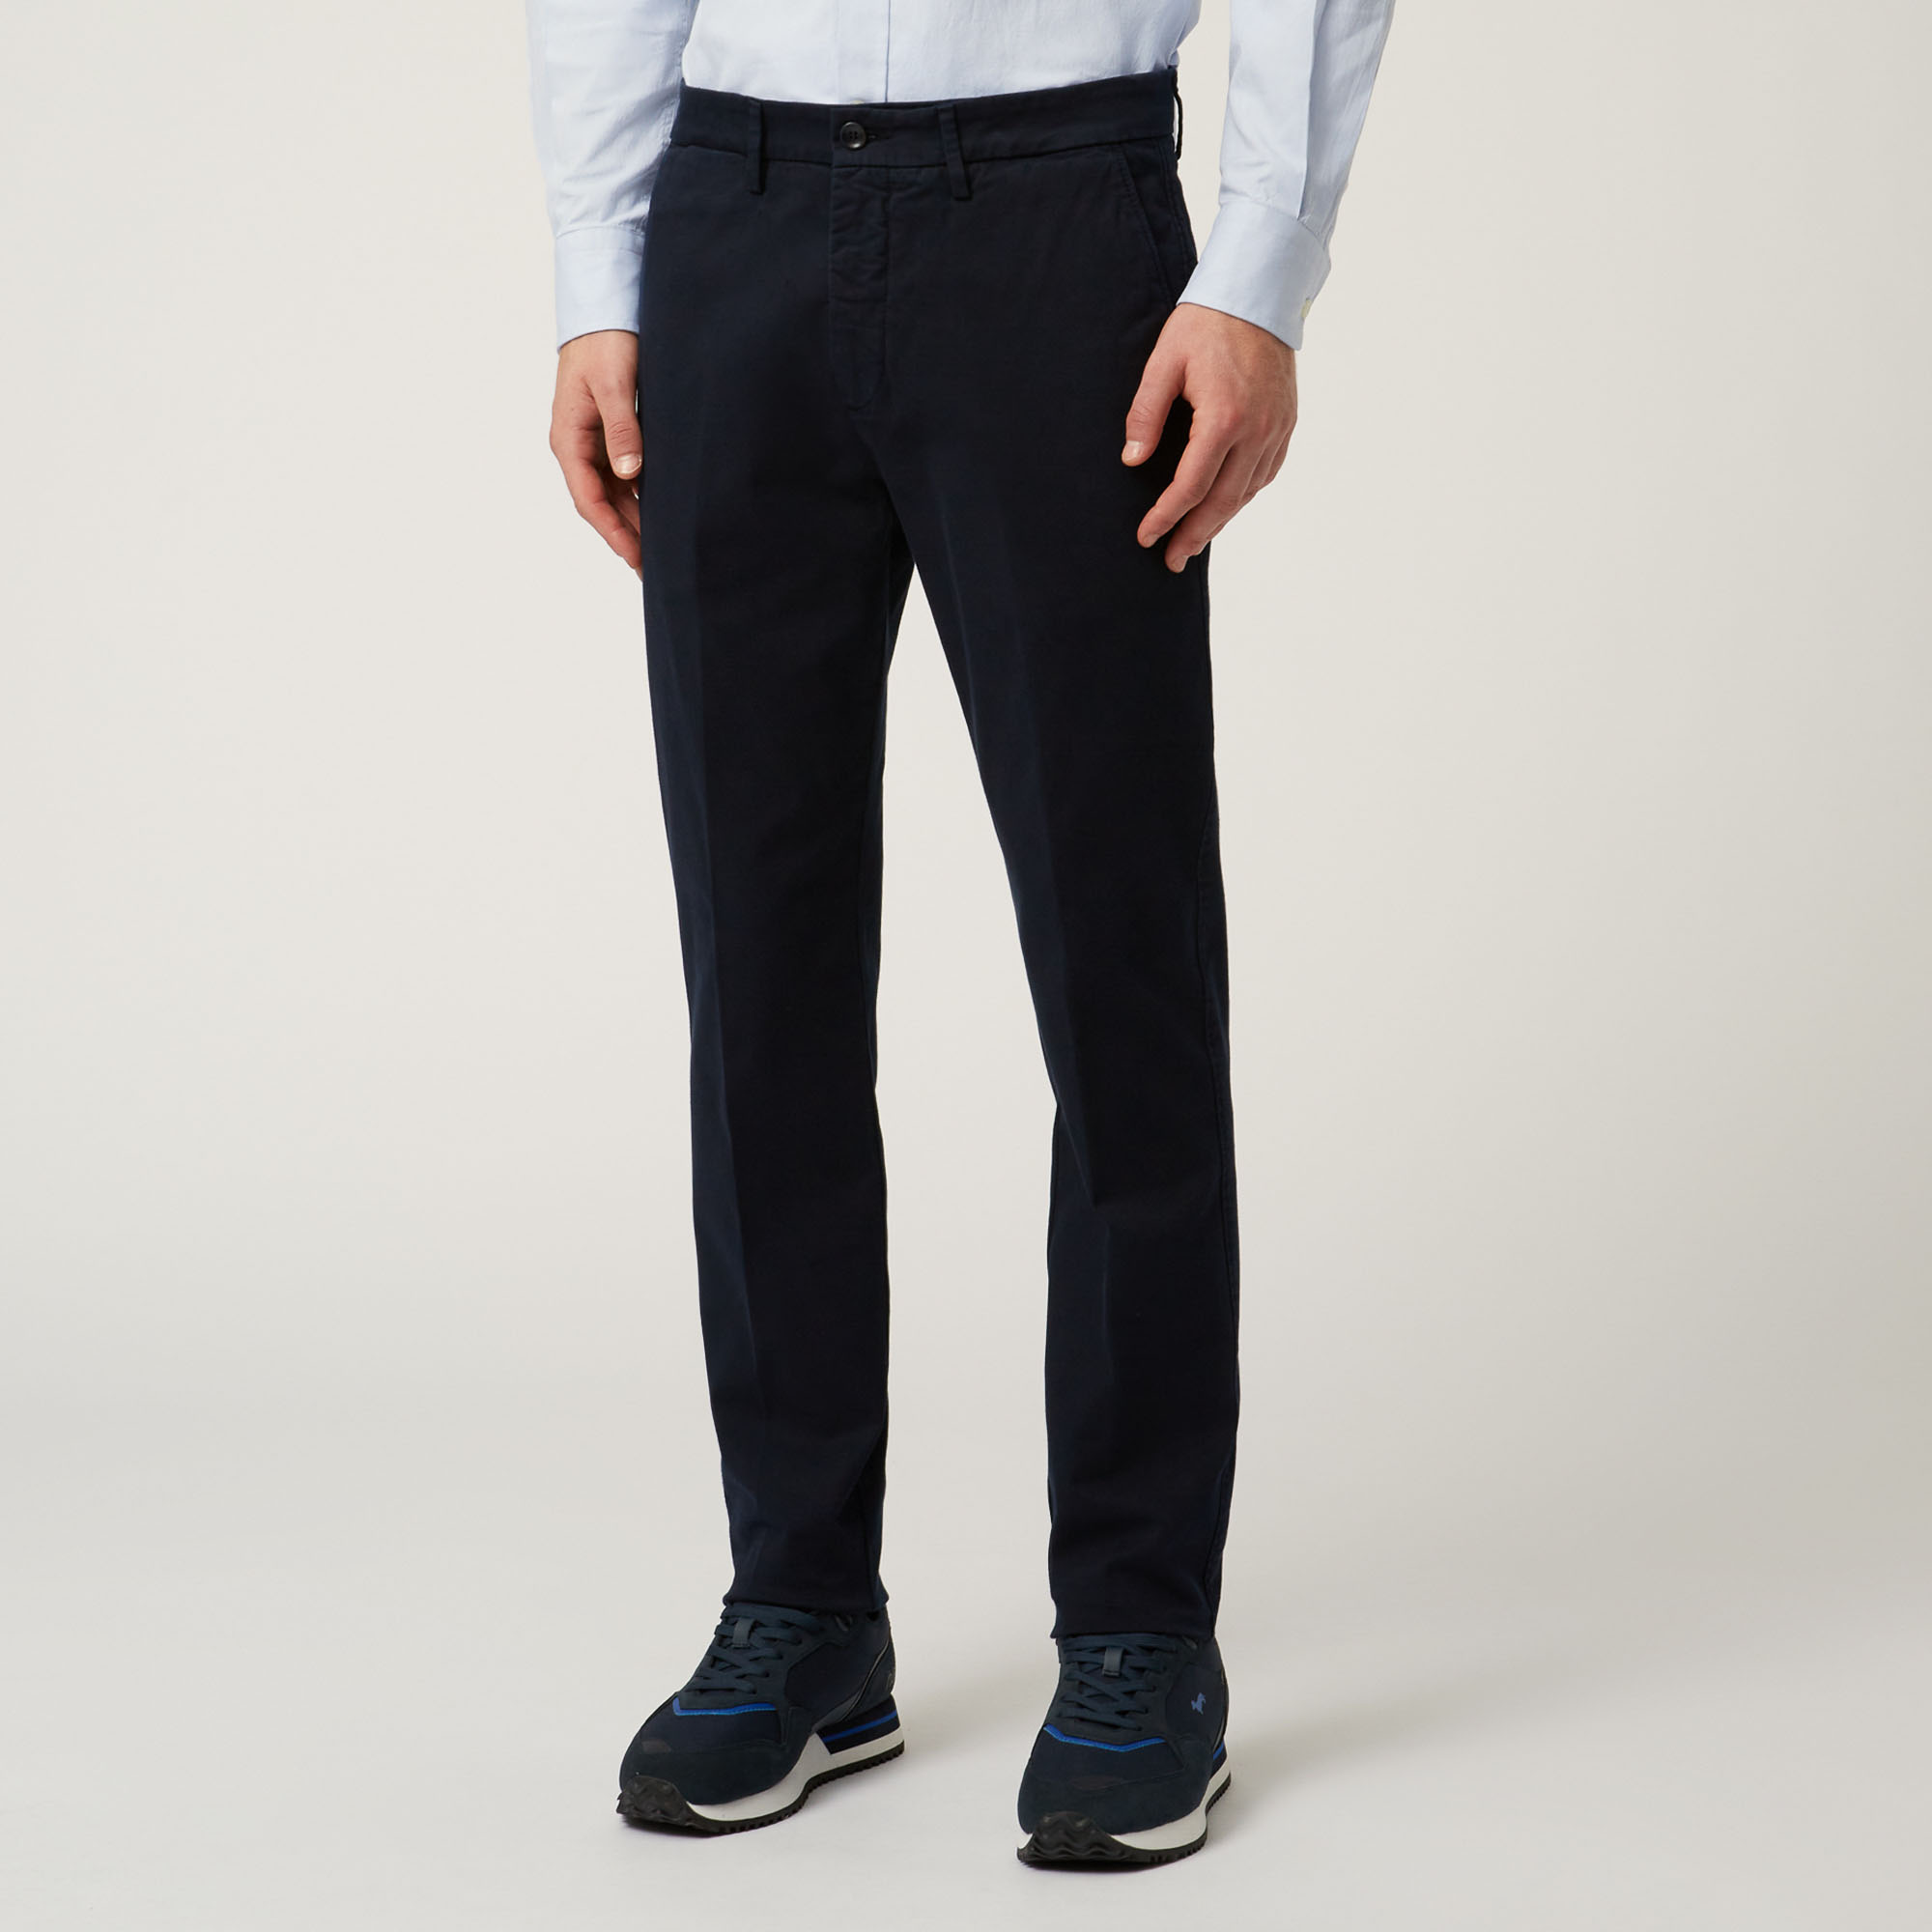 Pantalones Essentials de algodón elástico, Blu, large